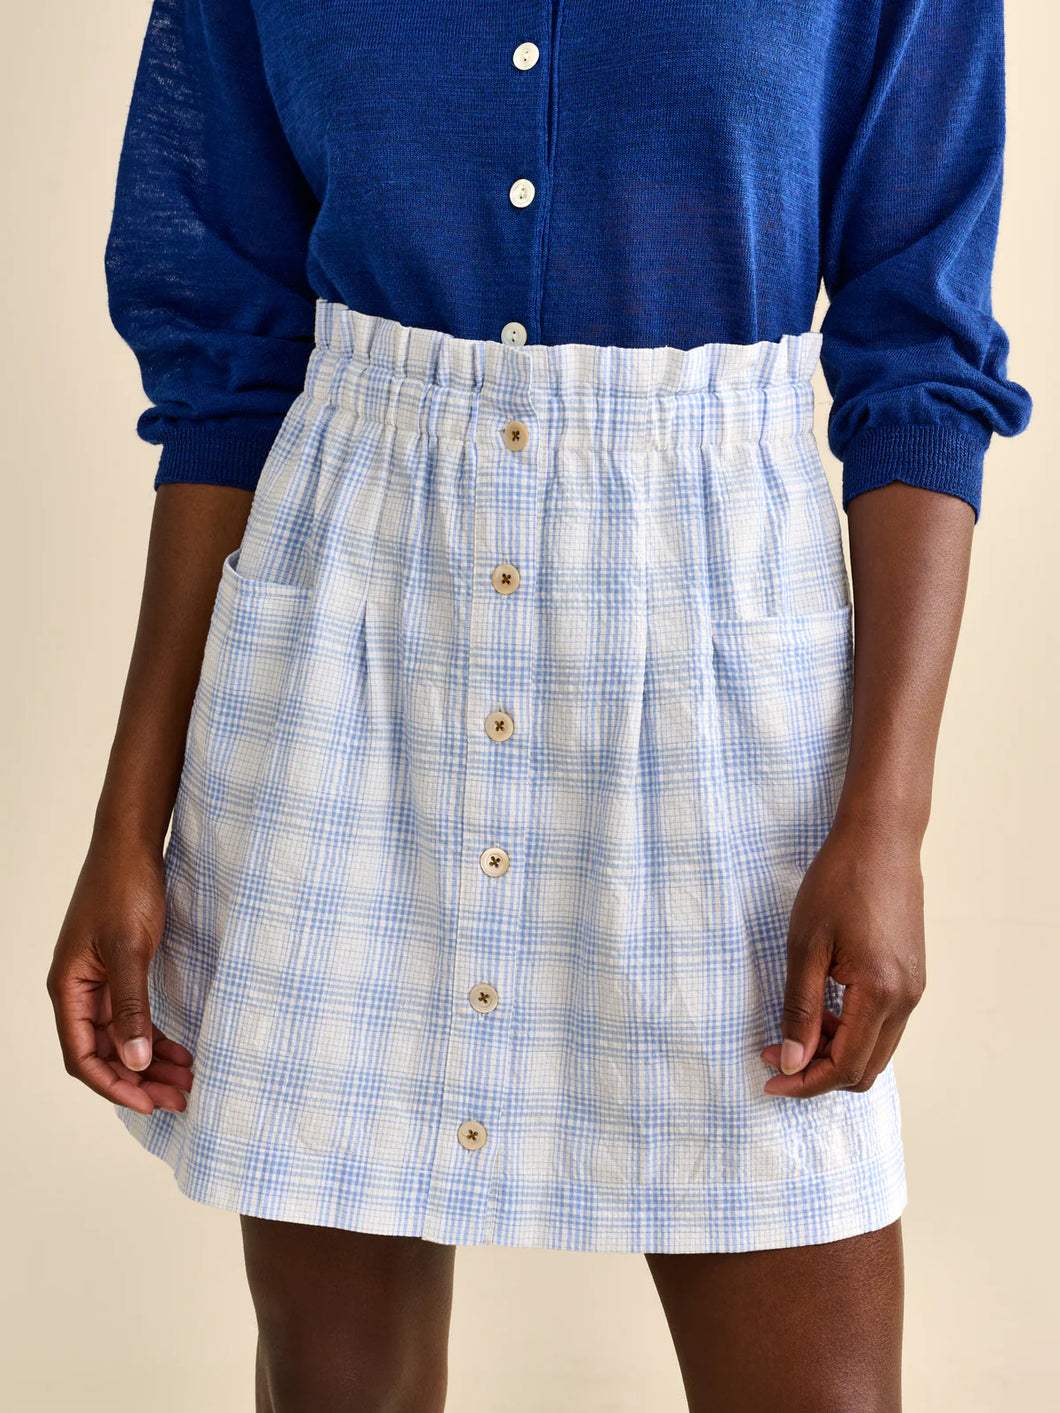 Bellerose April Skirt - White/Blue Check